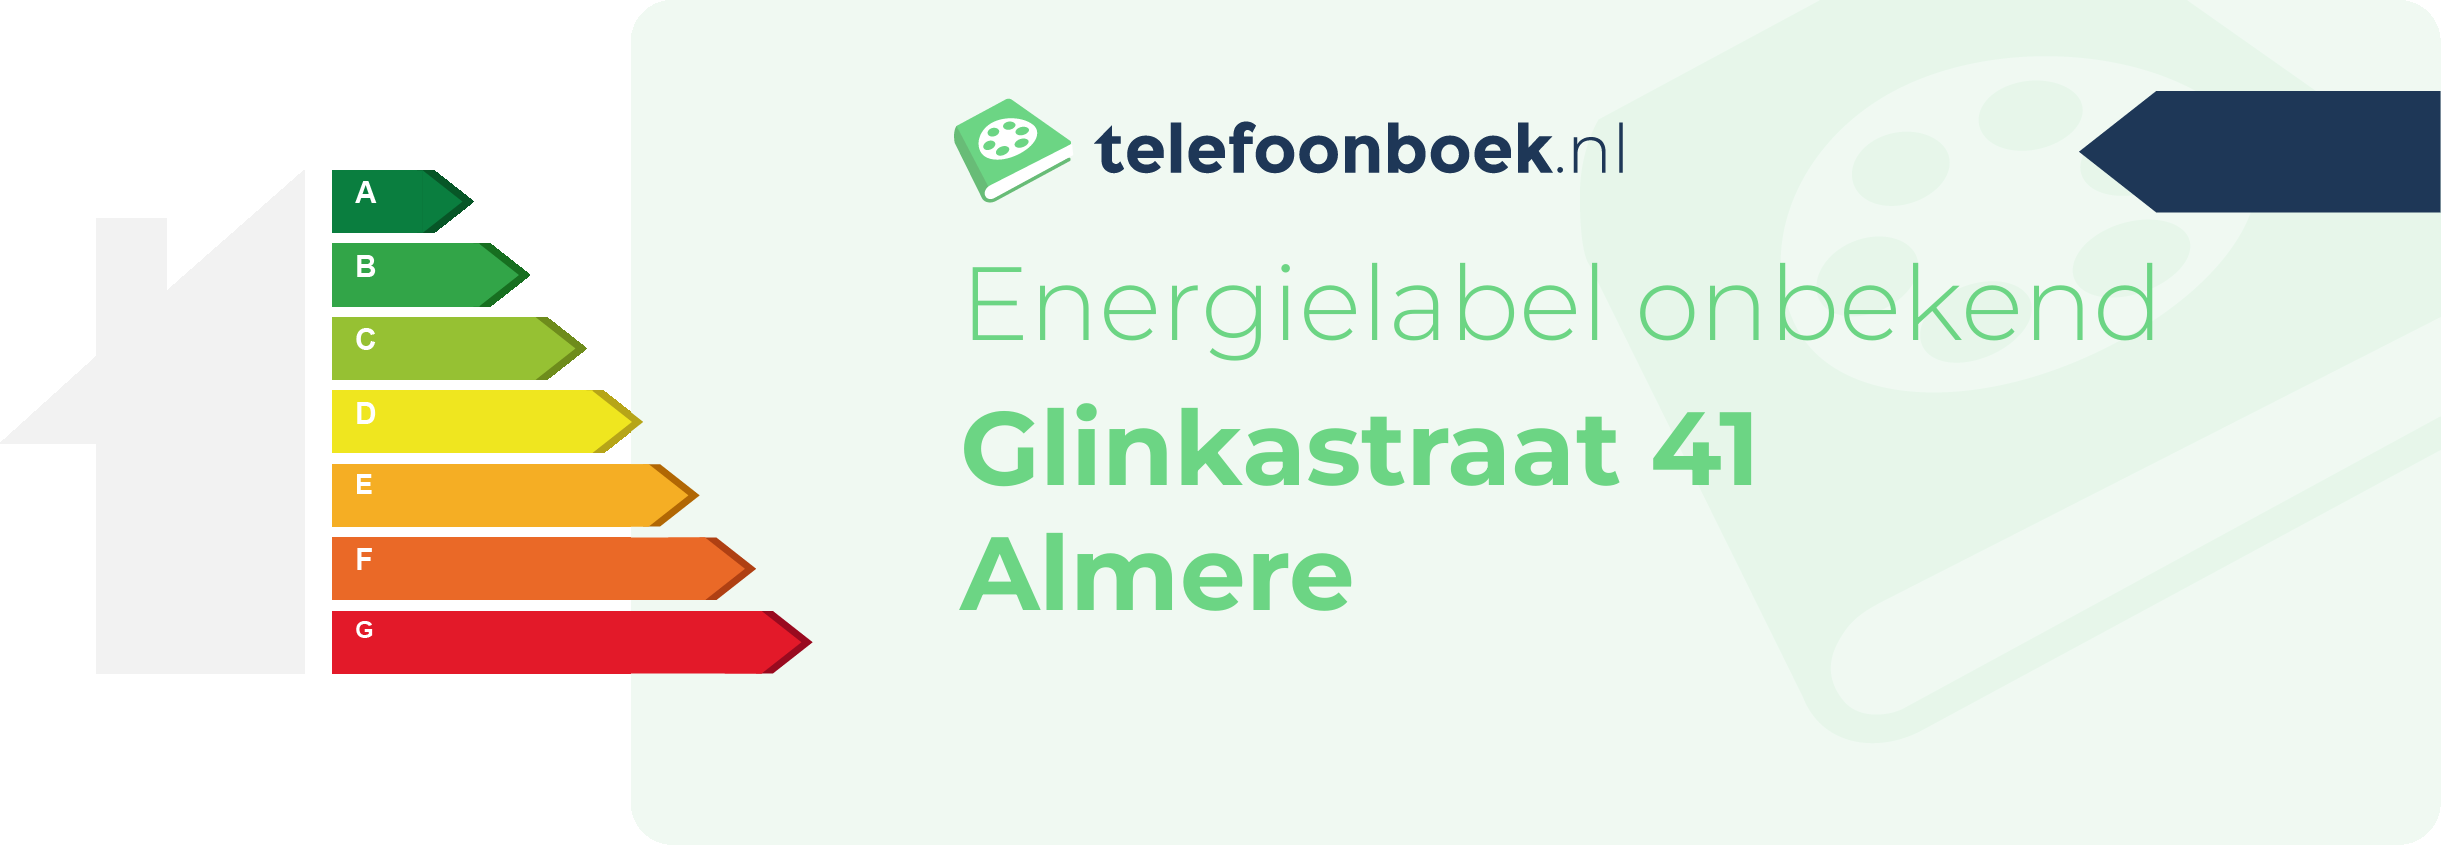 Energielabel Glinkastraat 41 Almere